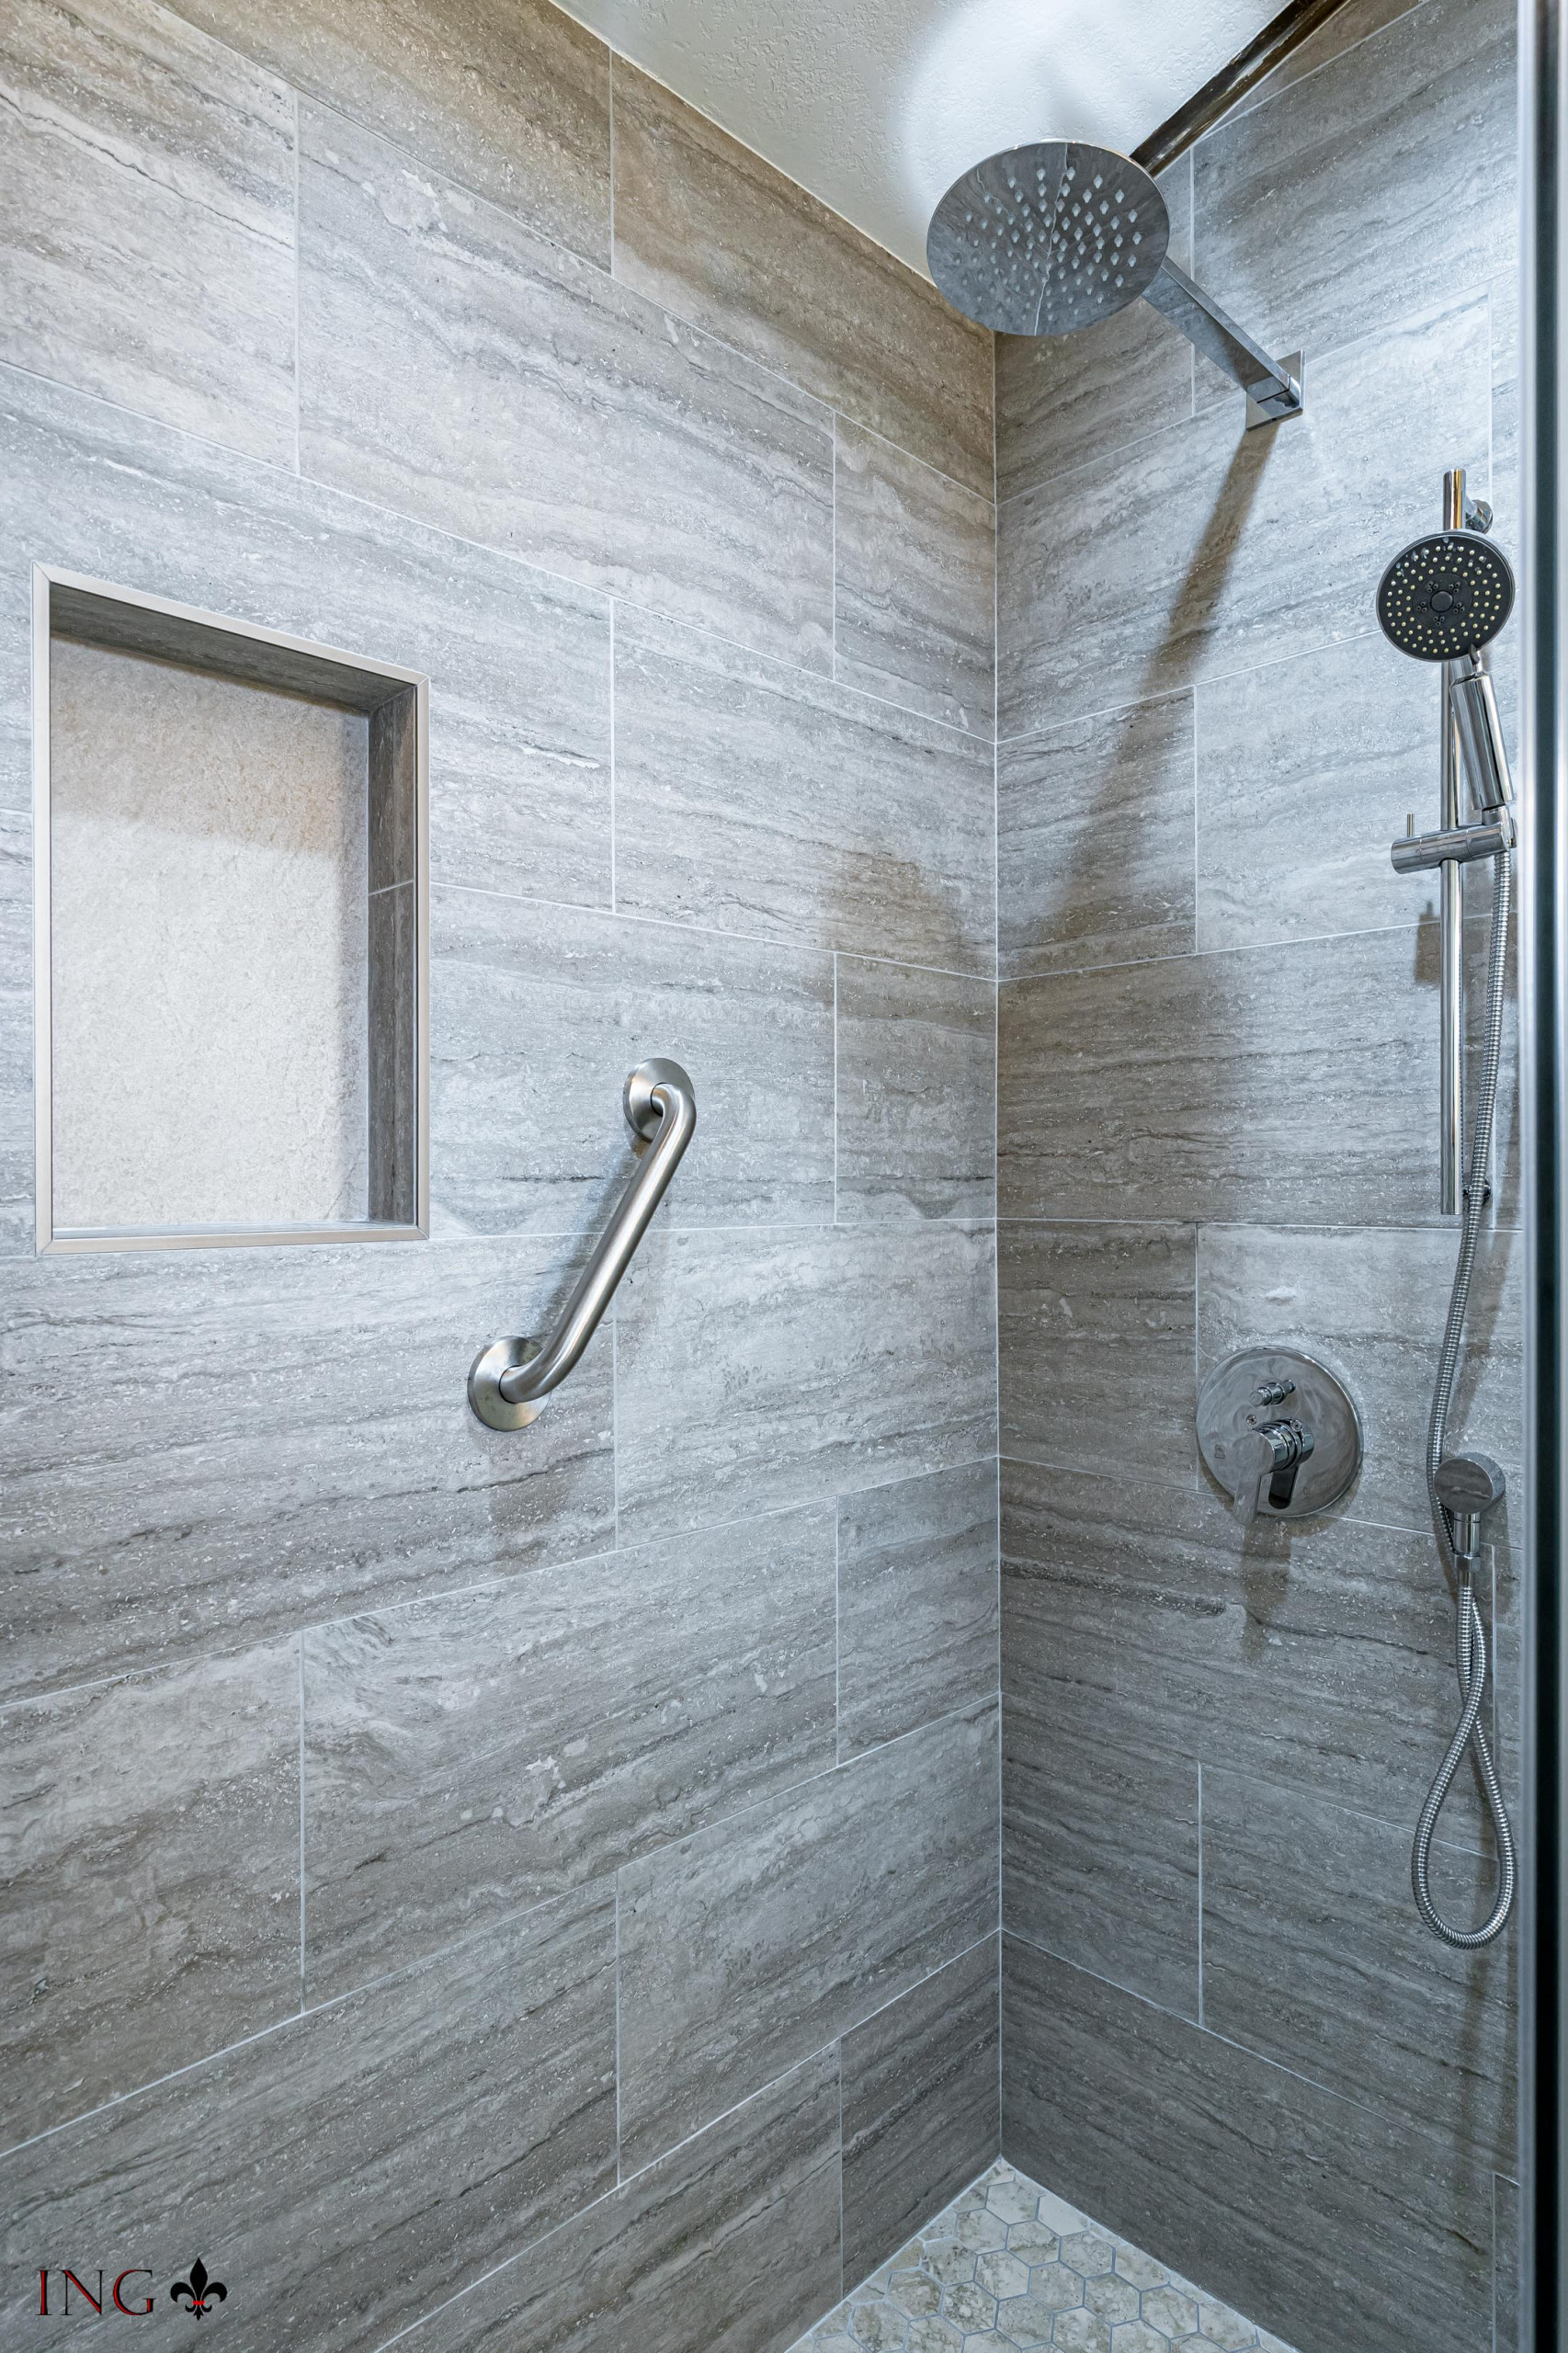 Shower Tile, Fixtures & Faucets